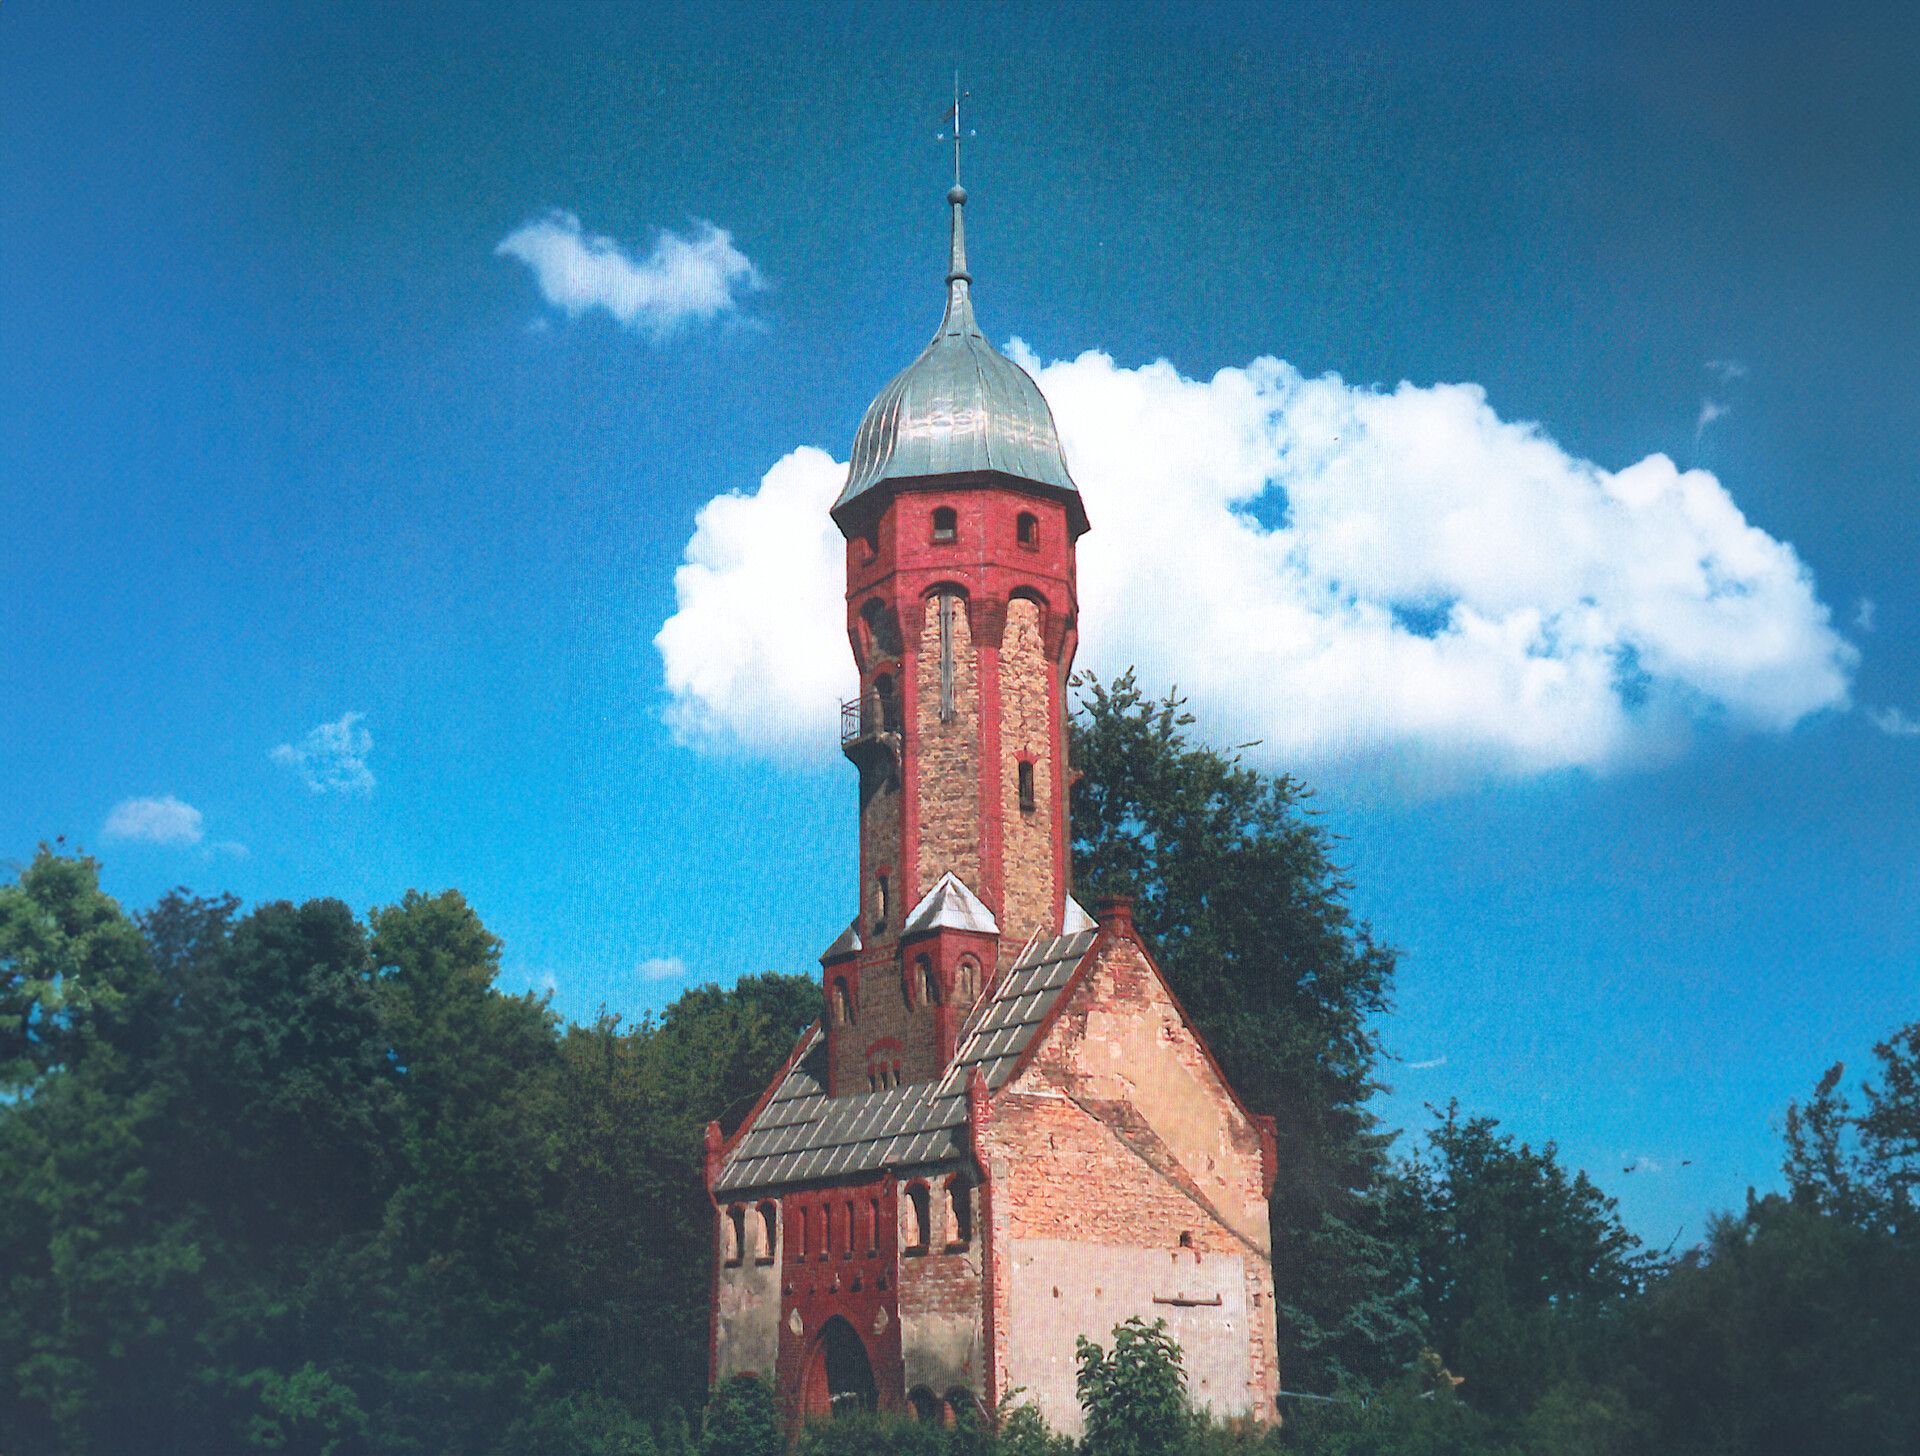 Wasserturm auf dem Guthof
(Dr. Wilfried Dötzel)